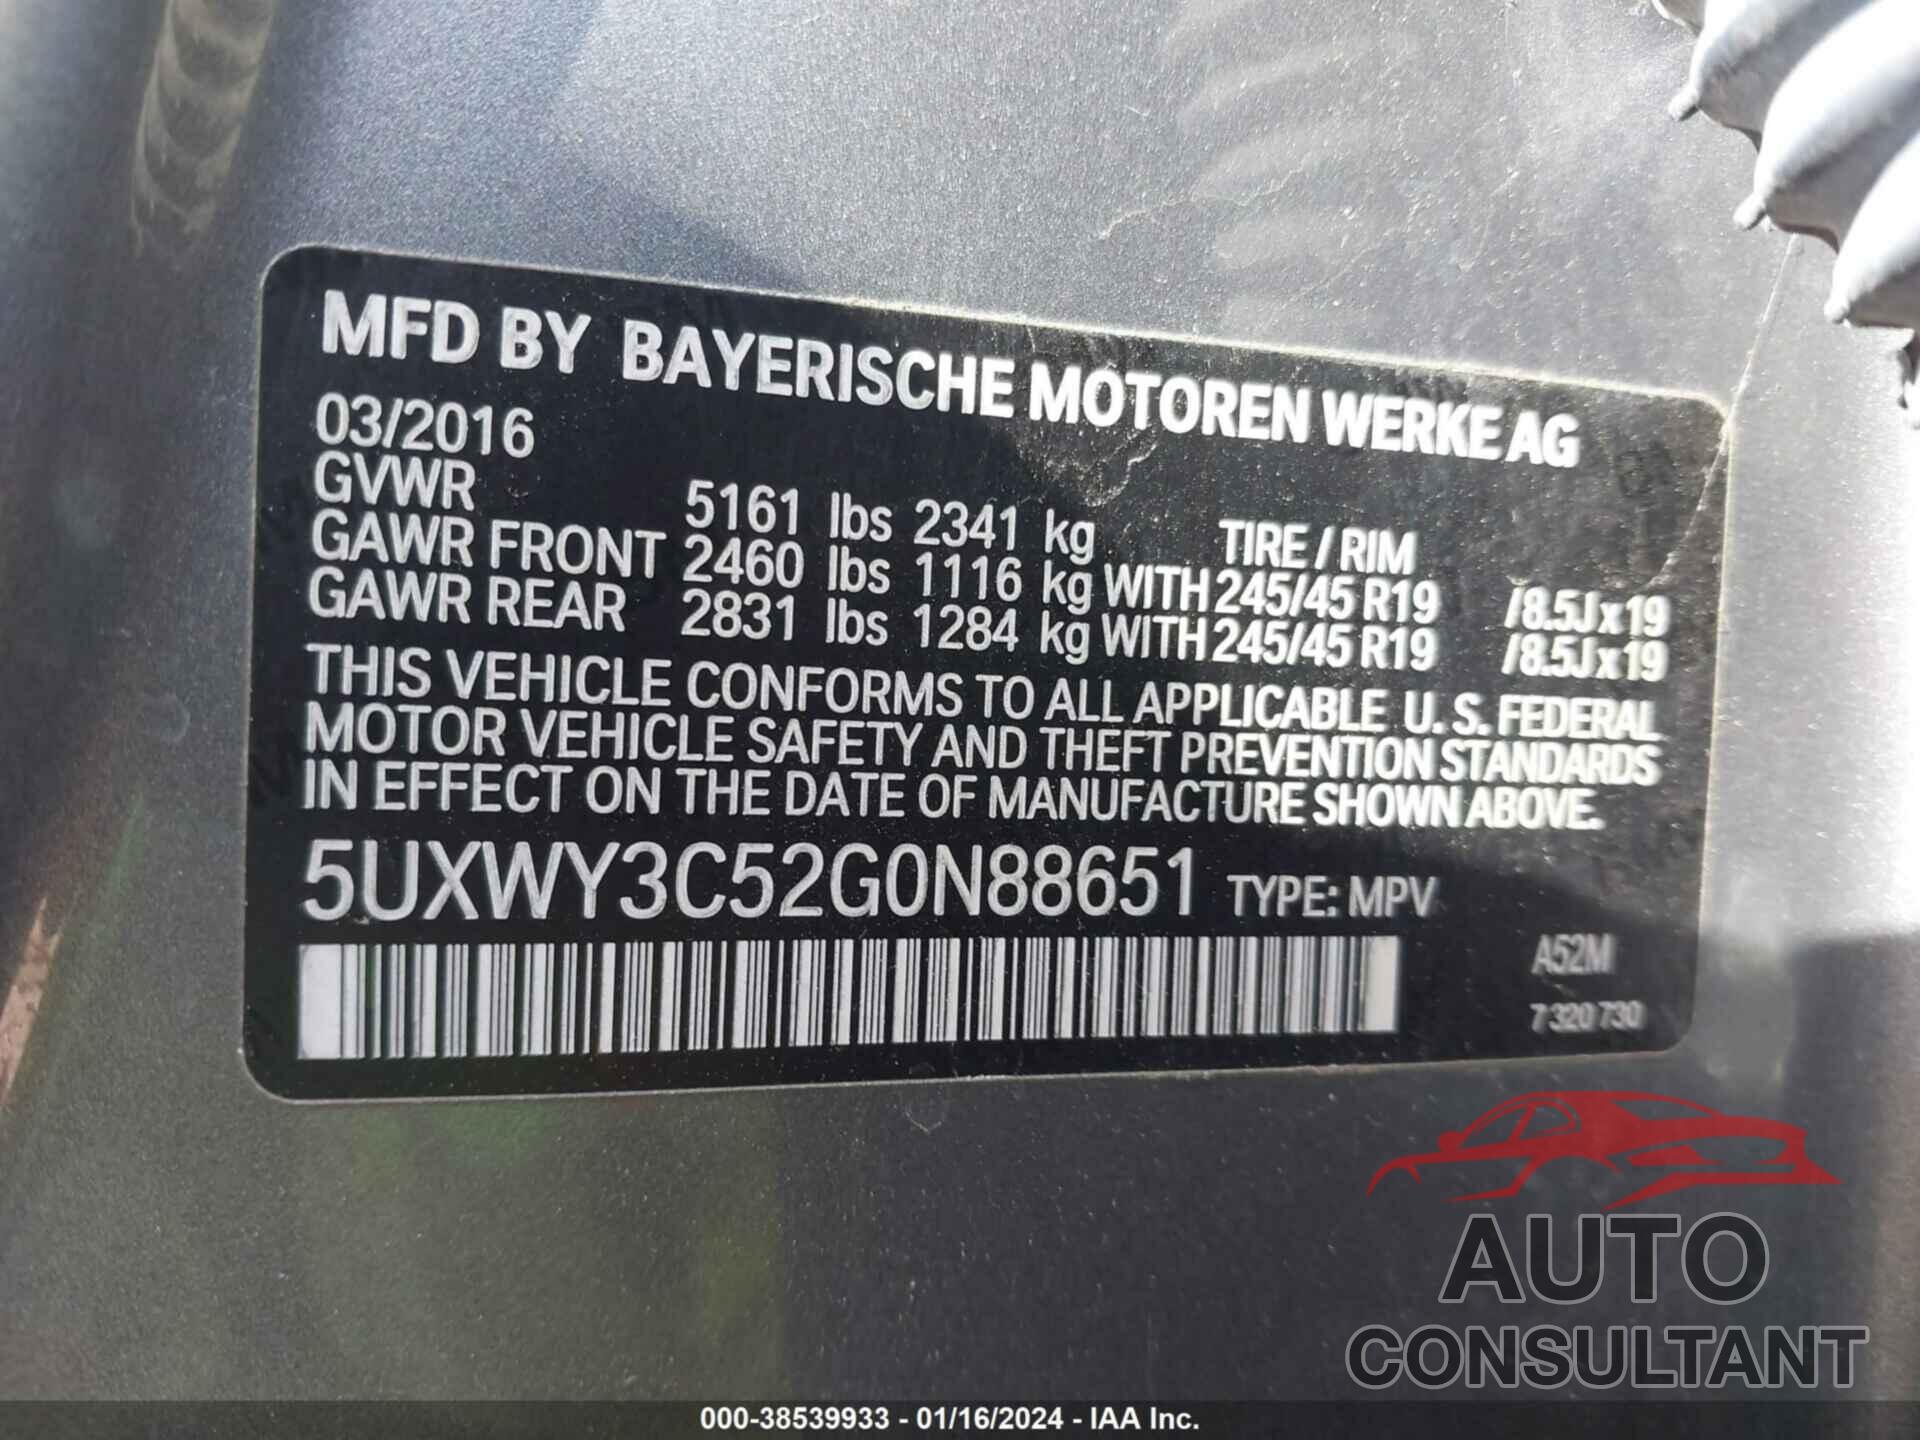 BMW X3 2016 - 5UXWY3C52G0N88651